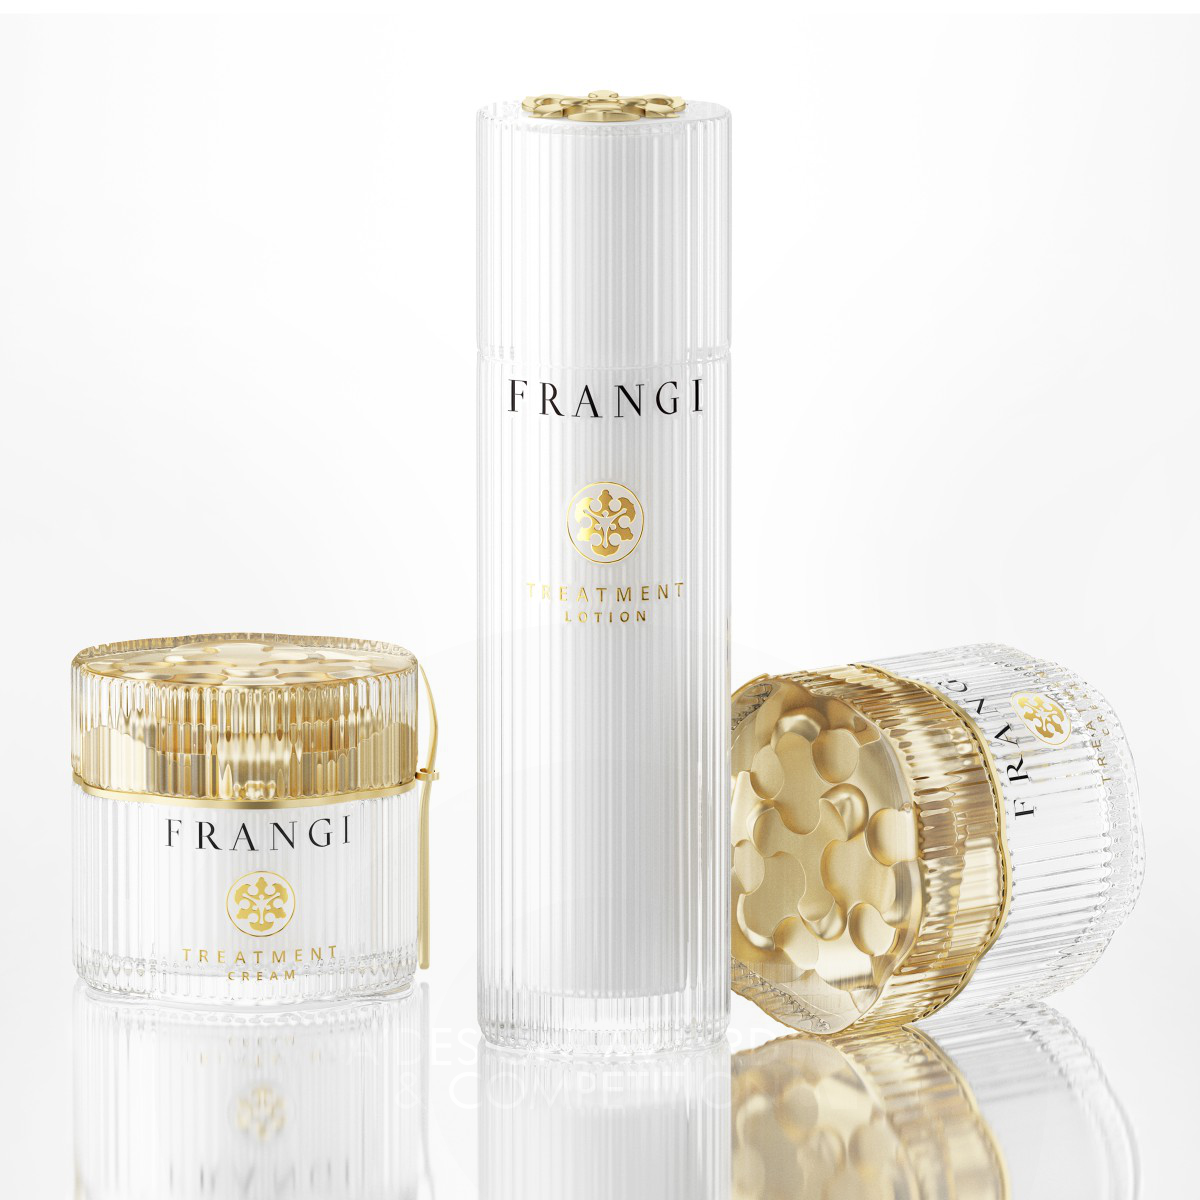 Frangi Premium Skin Care Series by TIGER PAN